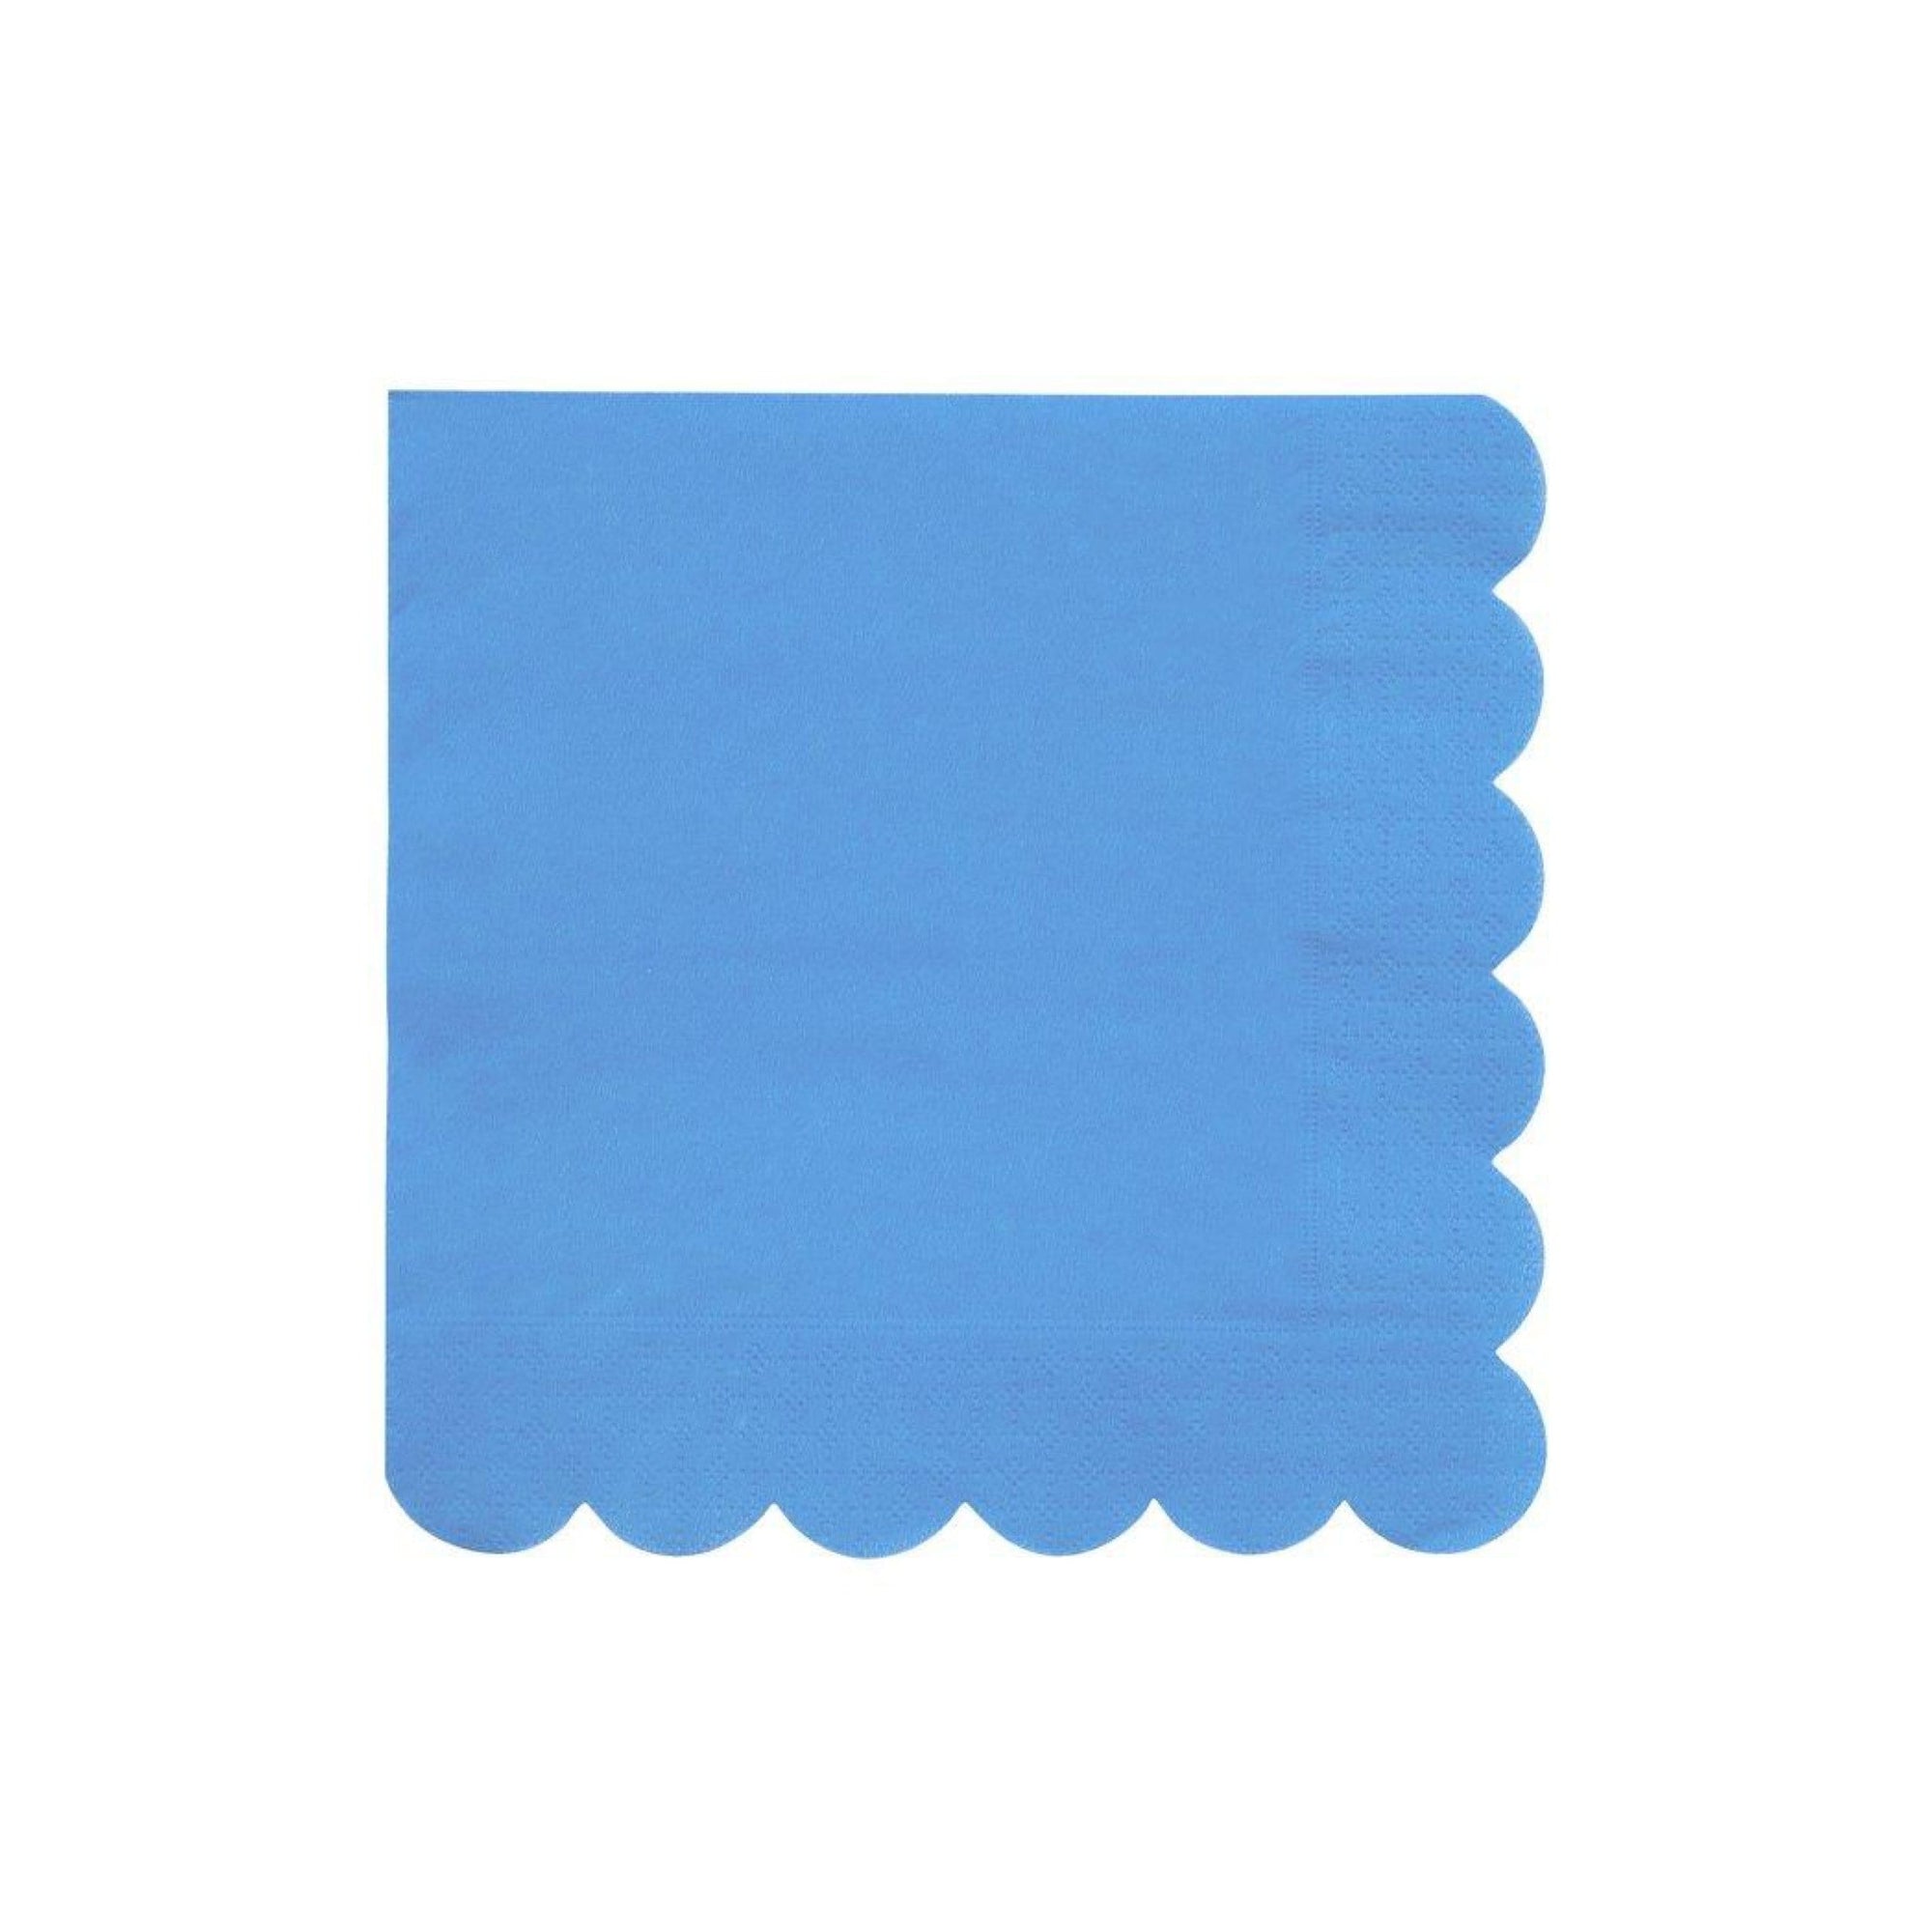 Blue Scalloped Napkins - Large